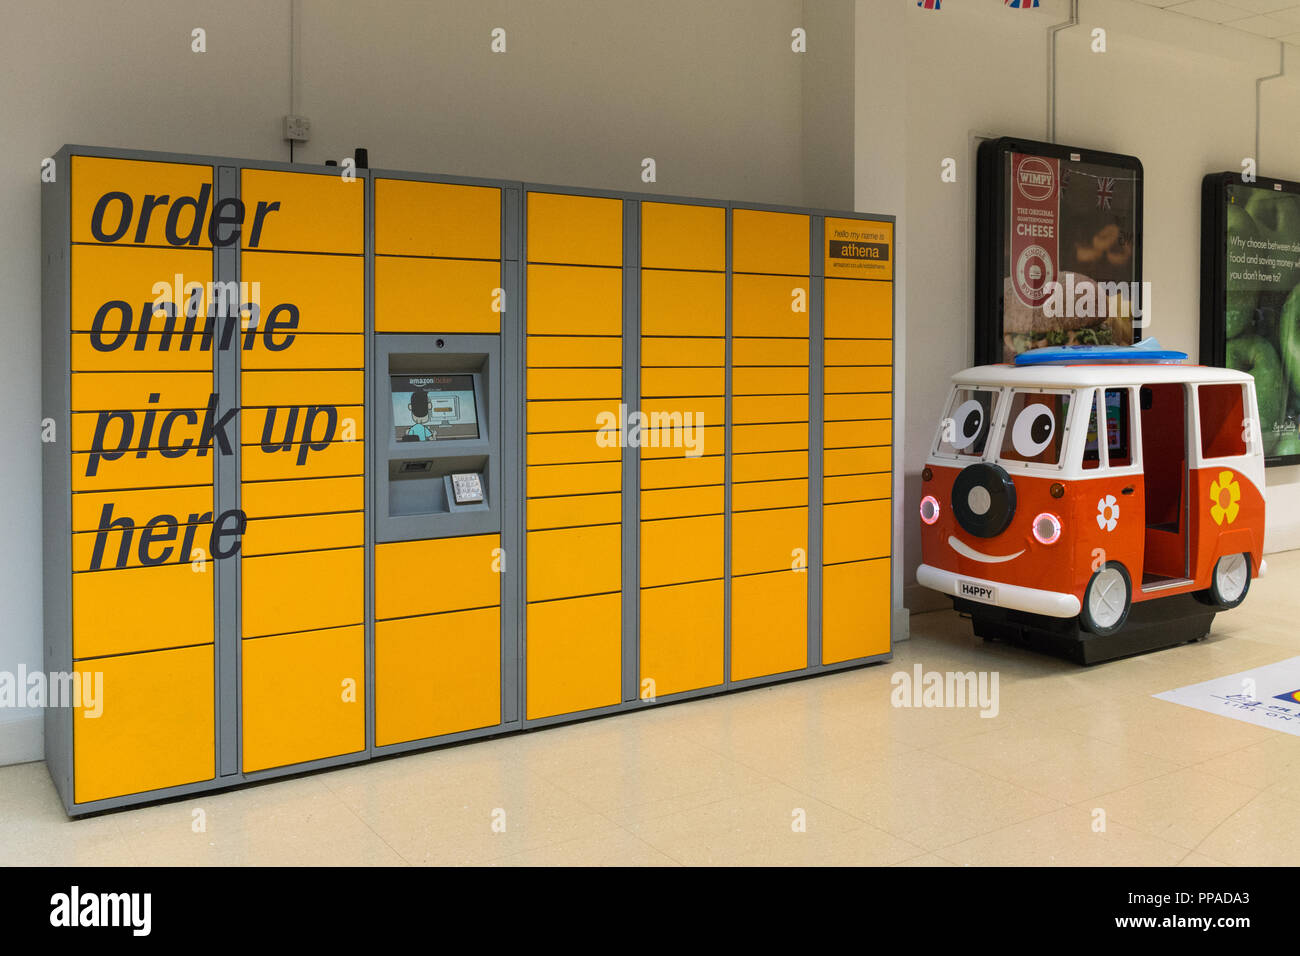 Amarillo Amazon taquillas y punto de recogida de los paquetes ordenados online en un centro comercial cubierto, REINO UNIDO Foto de stock